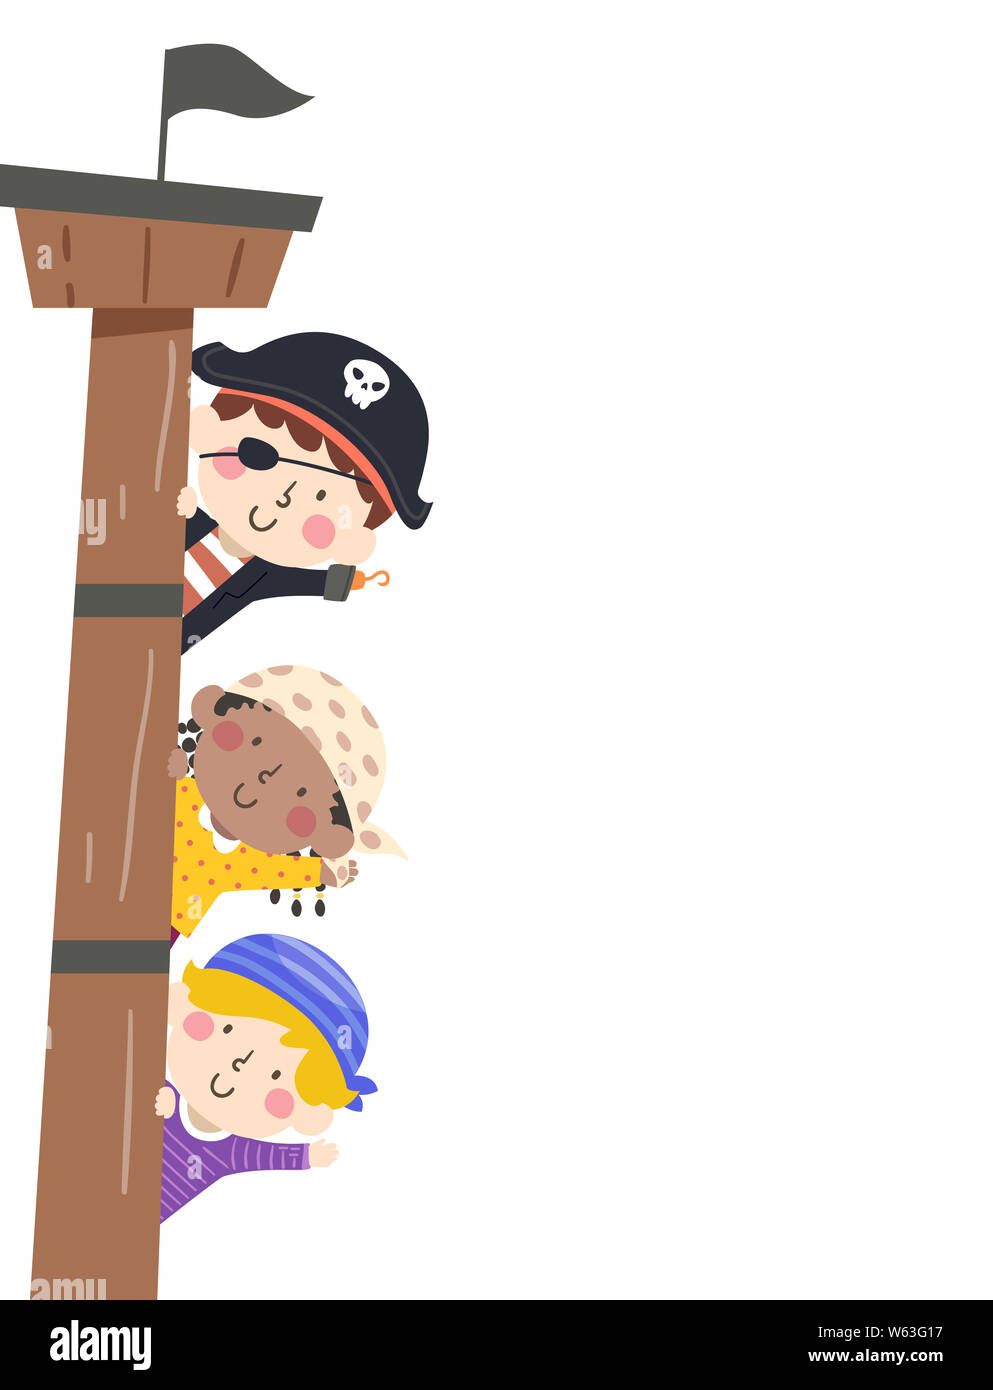 Abbildung: Kinder Winken und Tragen Piraten Kostüm von einem Schiff Mast Grenze Stockfoto